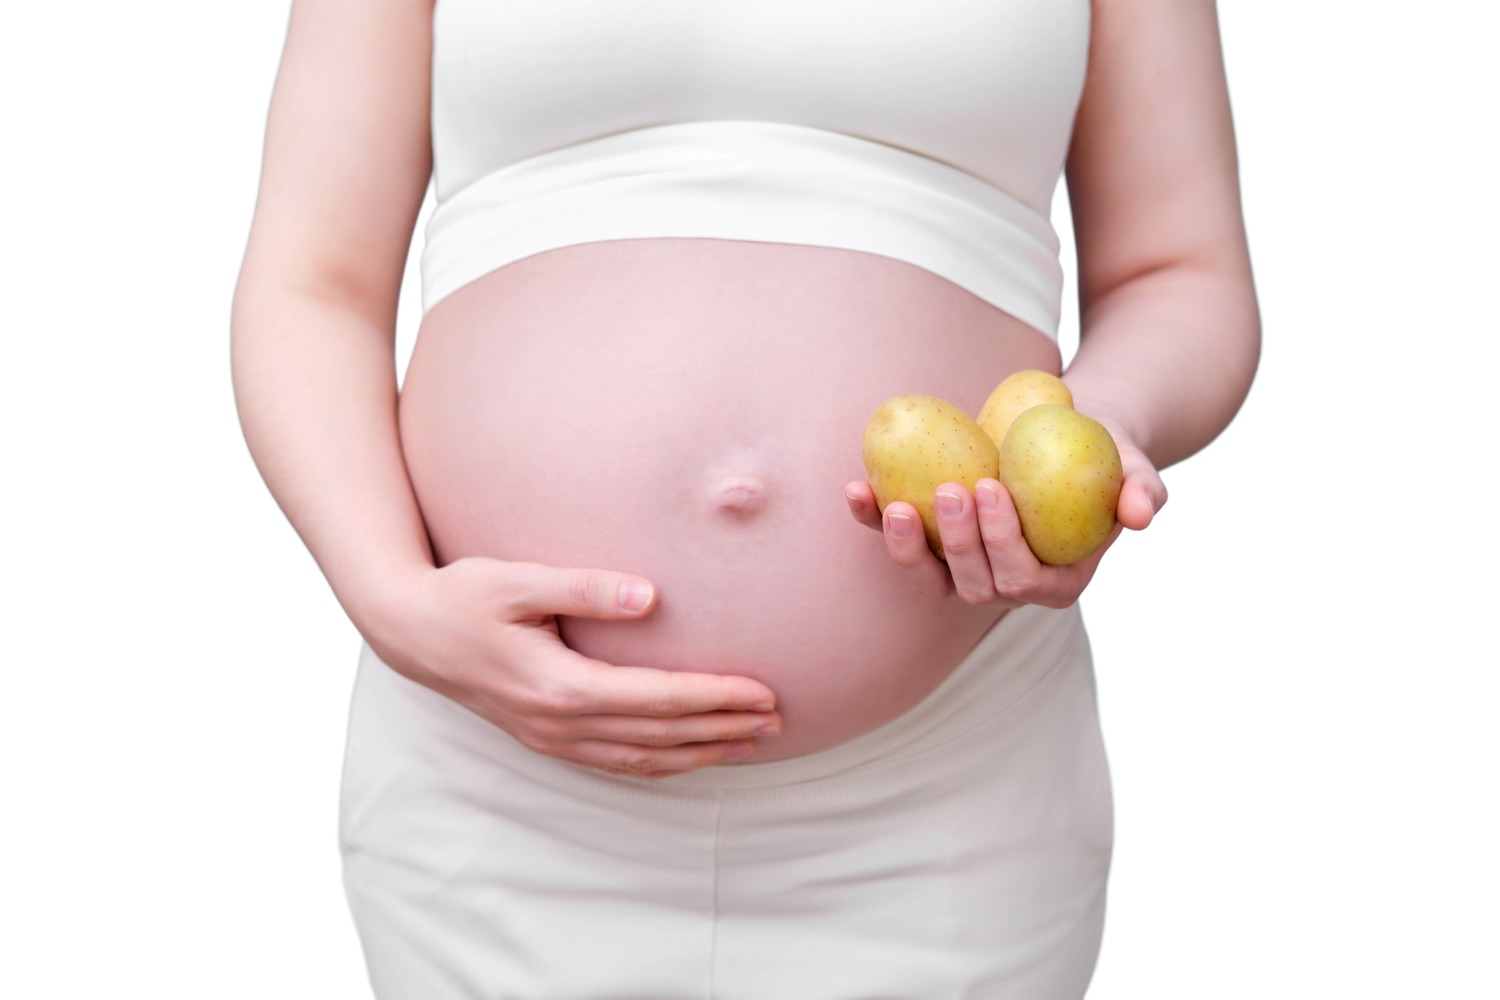 Pregnant woman with potato